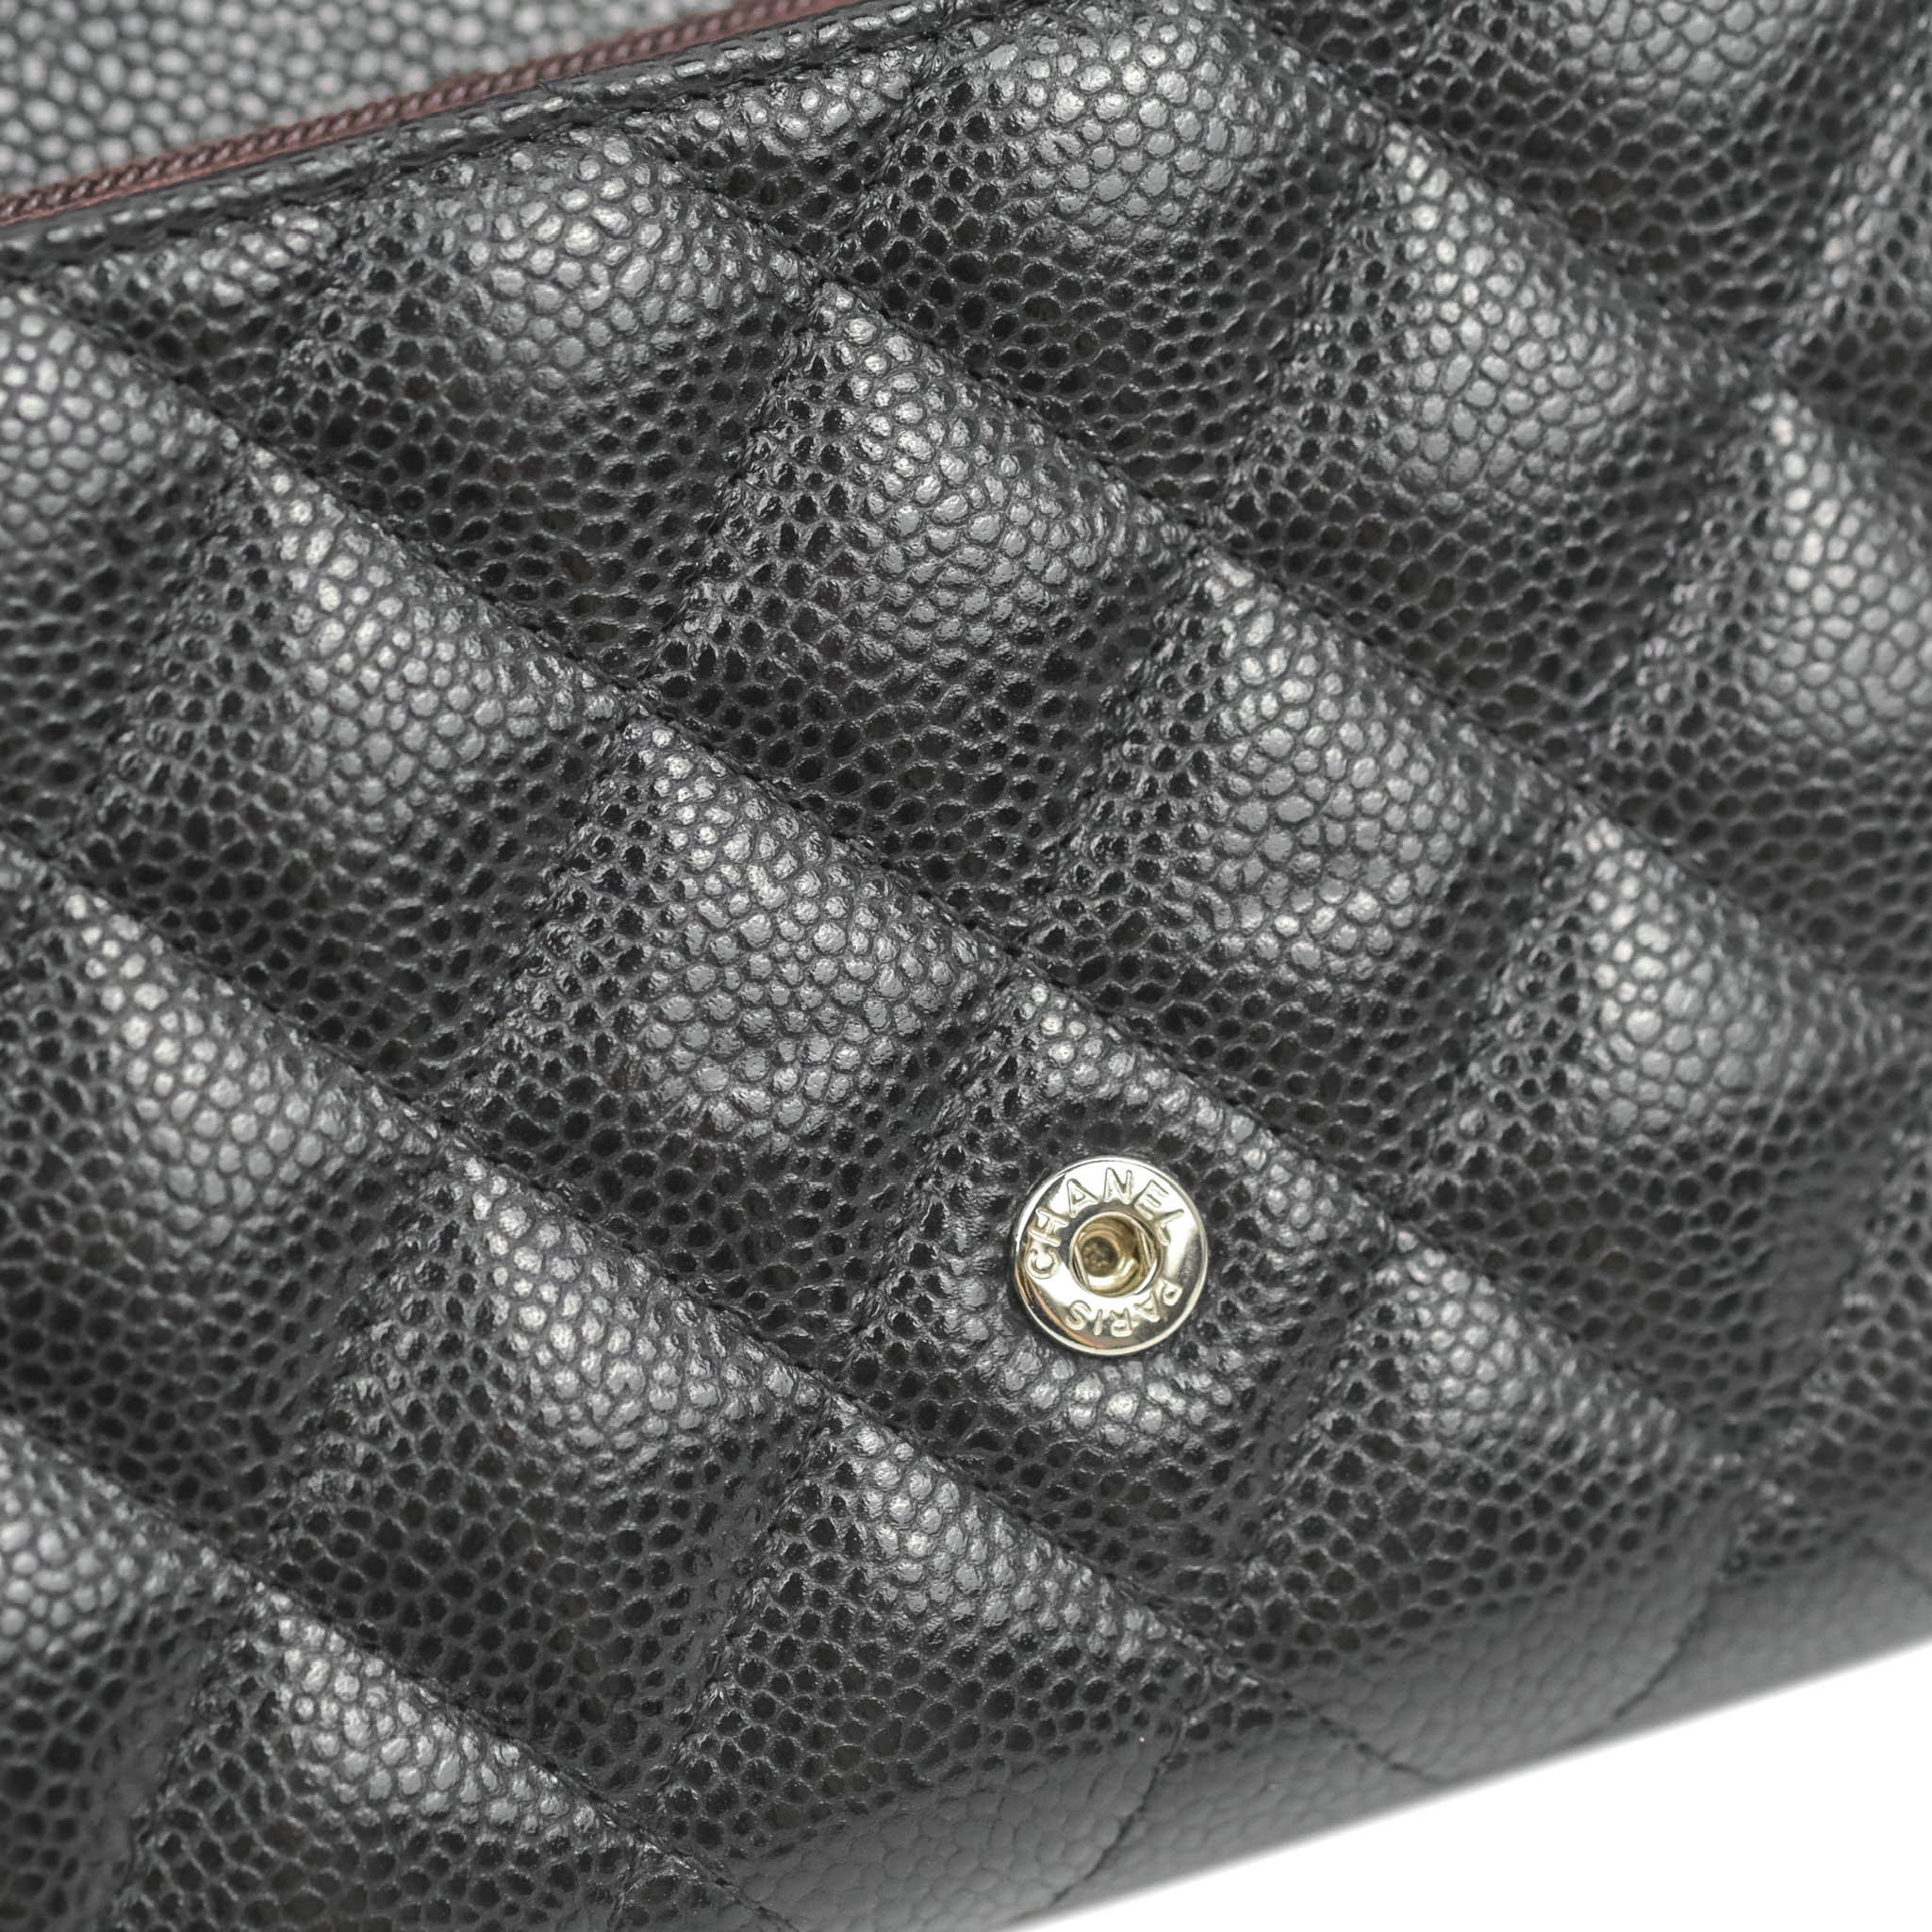 Chanel Black Caviar Long Flap Wallet SHW No. 12 at 1stDibs